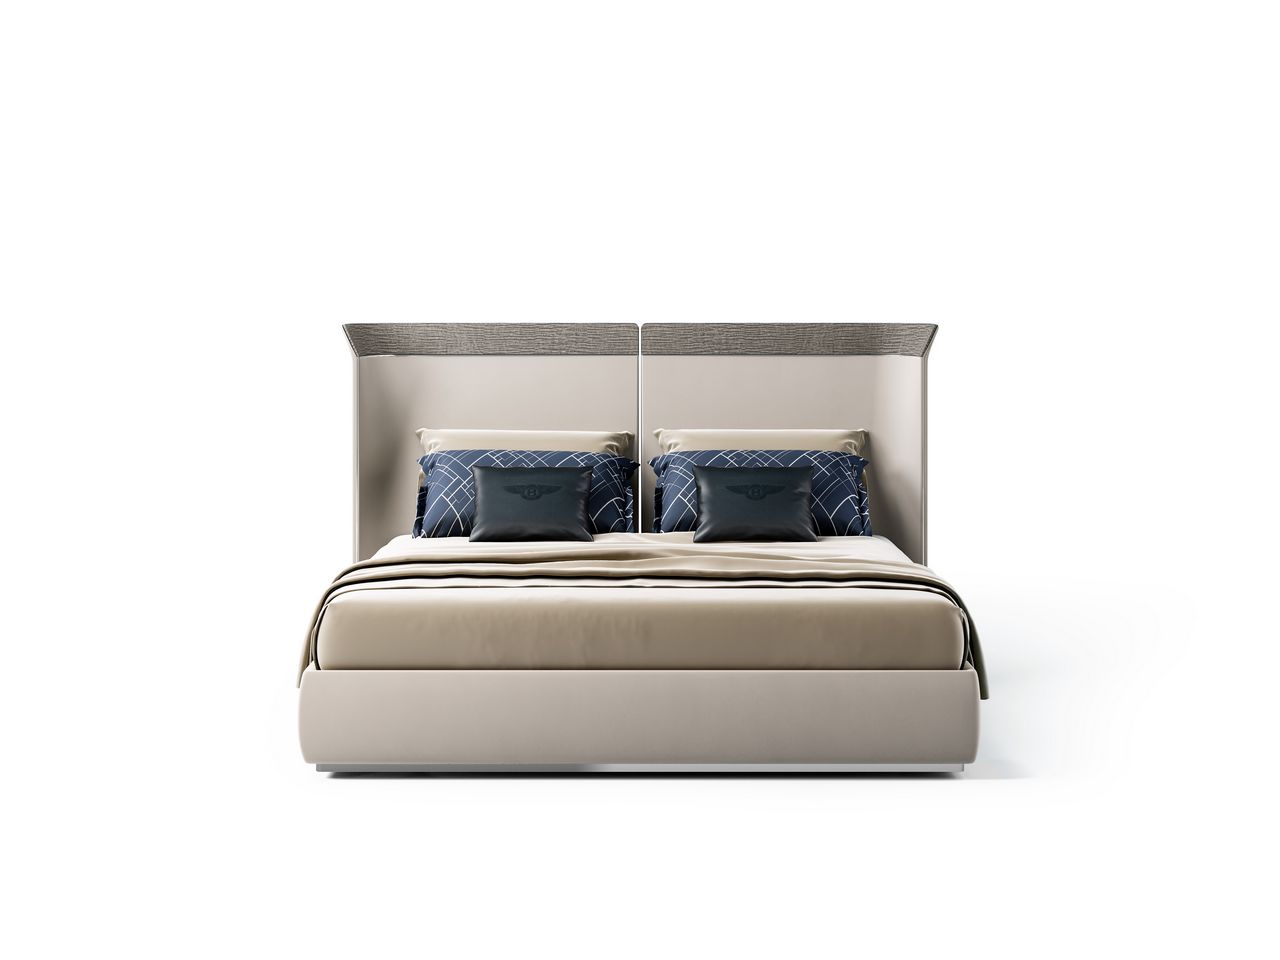 מיטה זוגית יוקרתית בעיצוב בנטלי, ראש מיטה גבוה וריפוד מוקפד